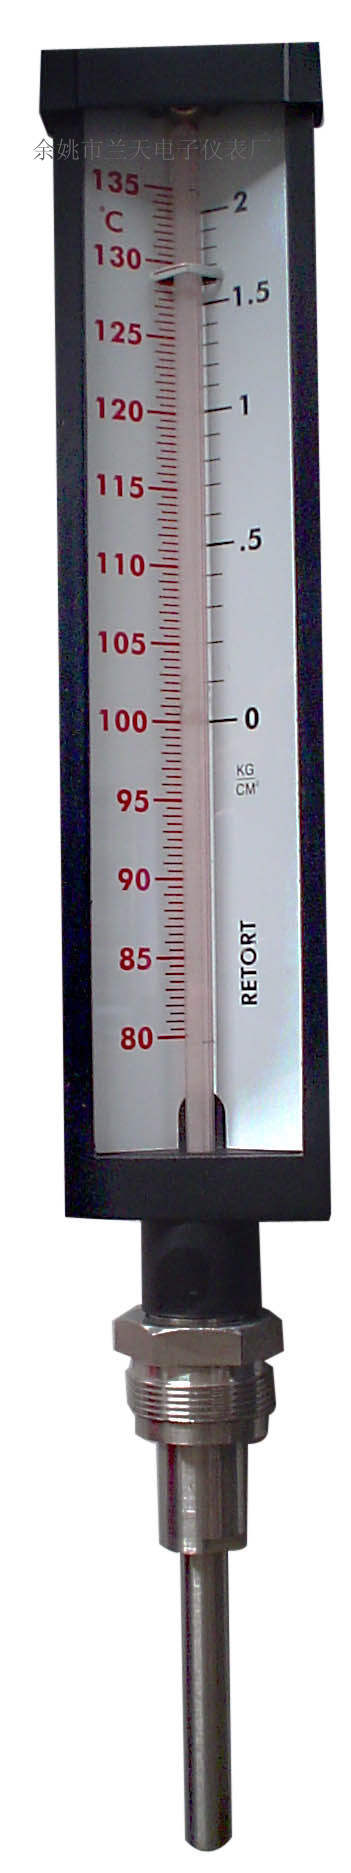 鋁殼工業溫度計